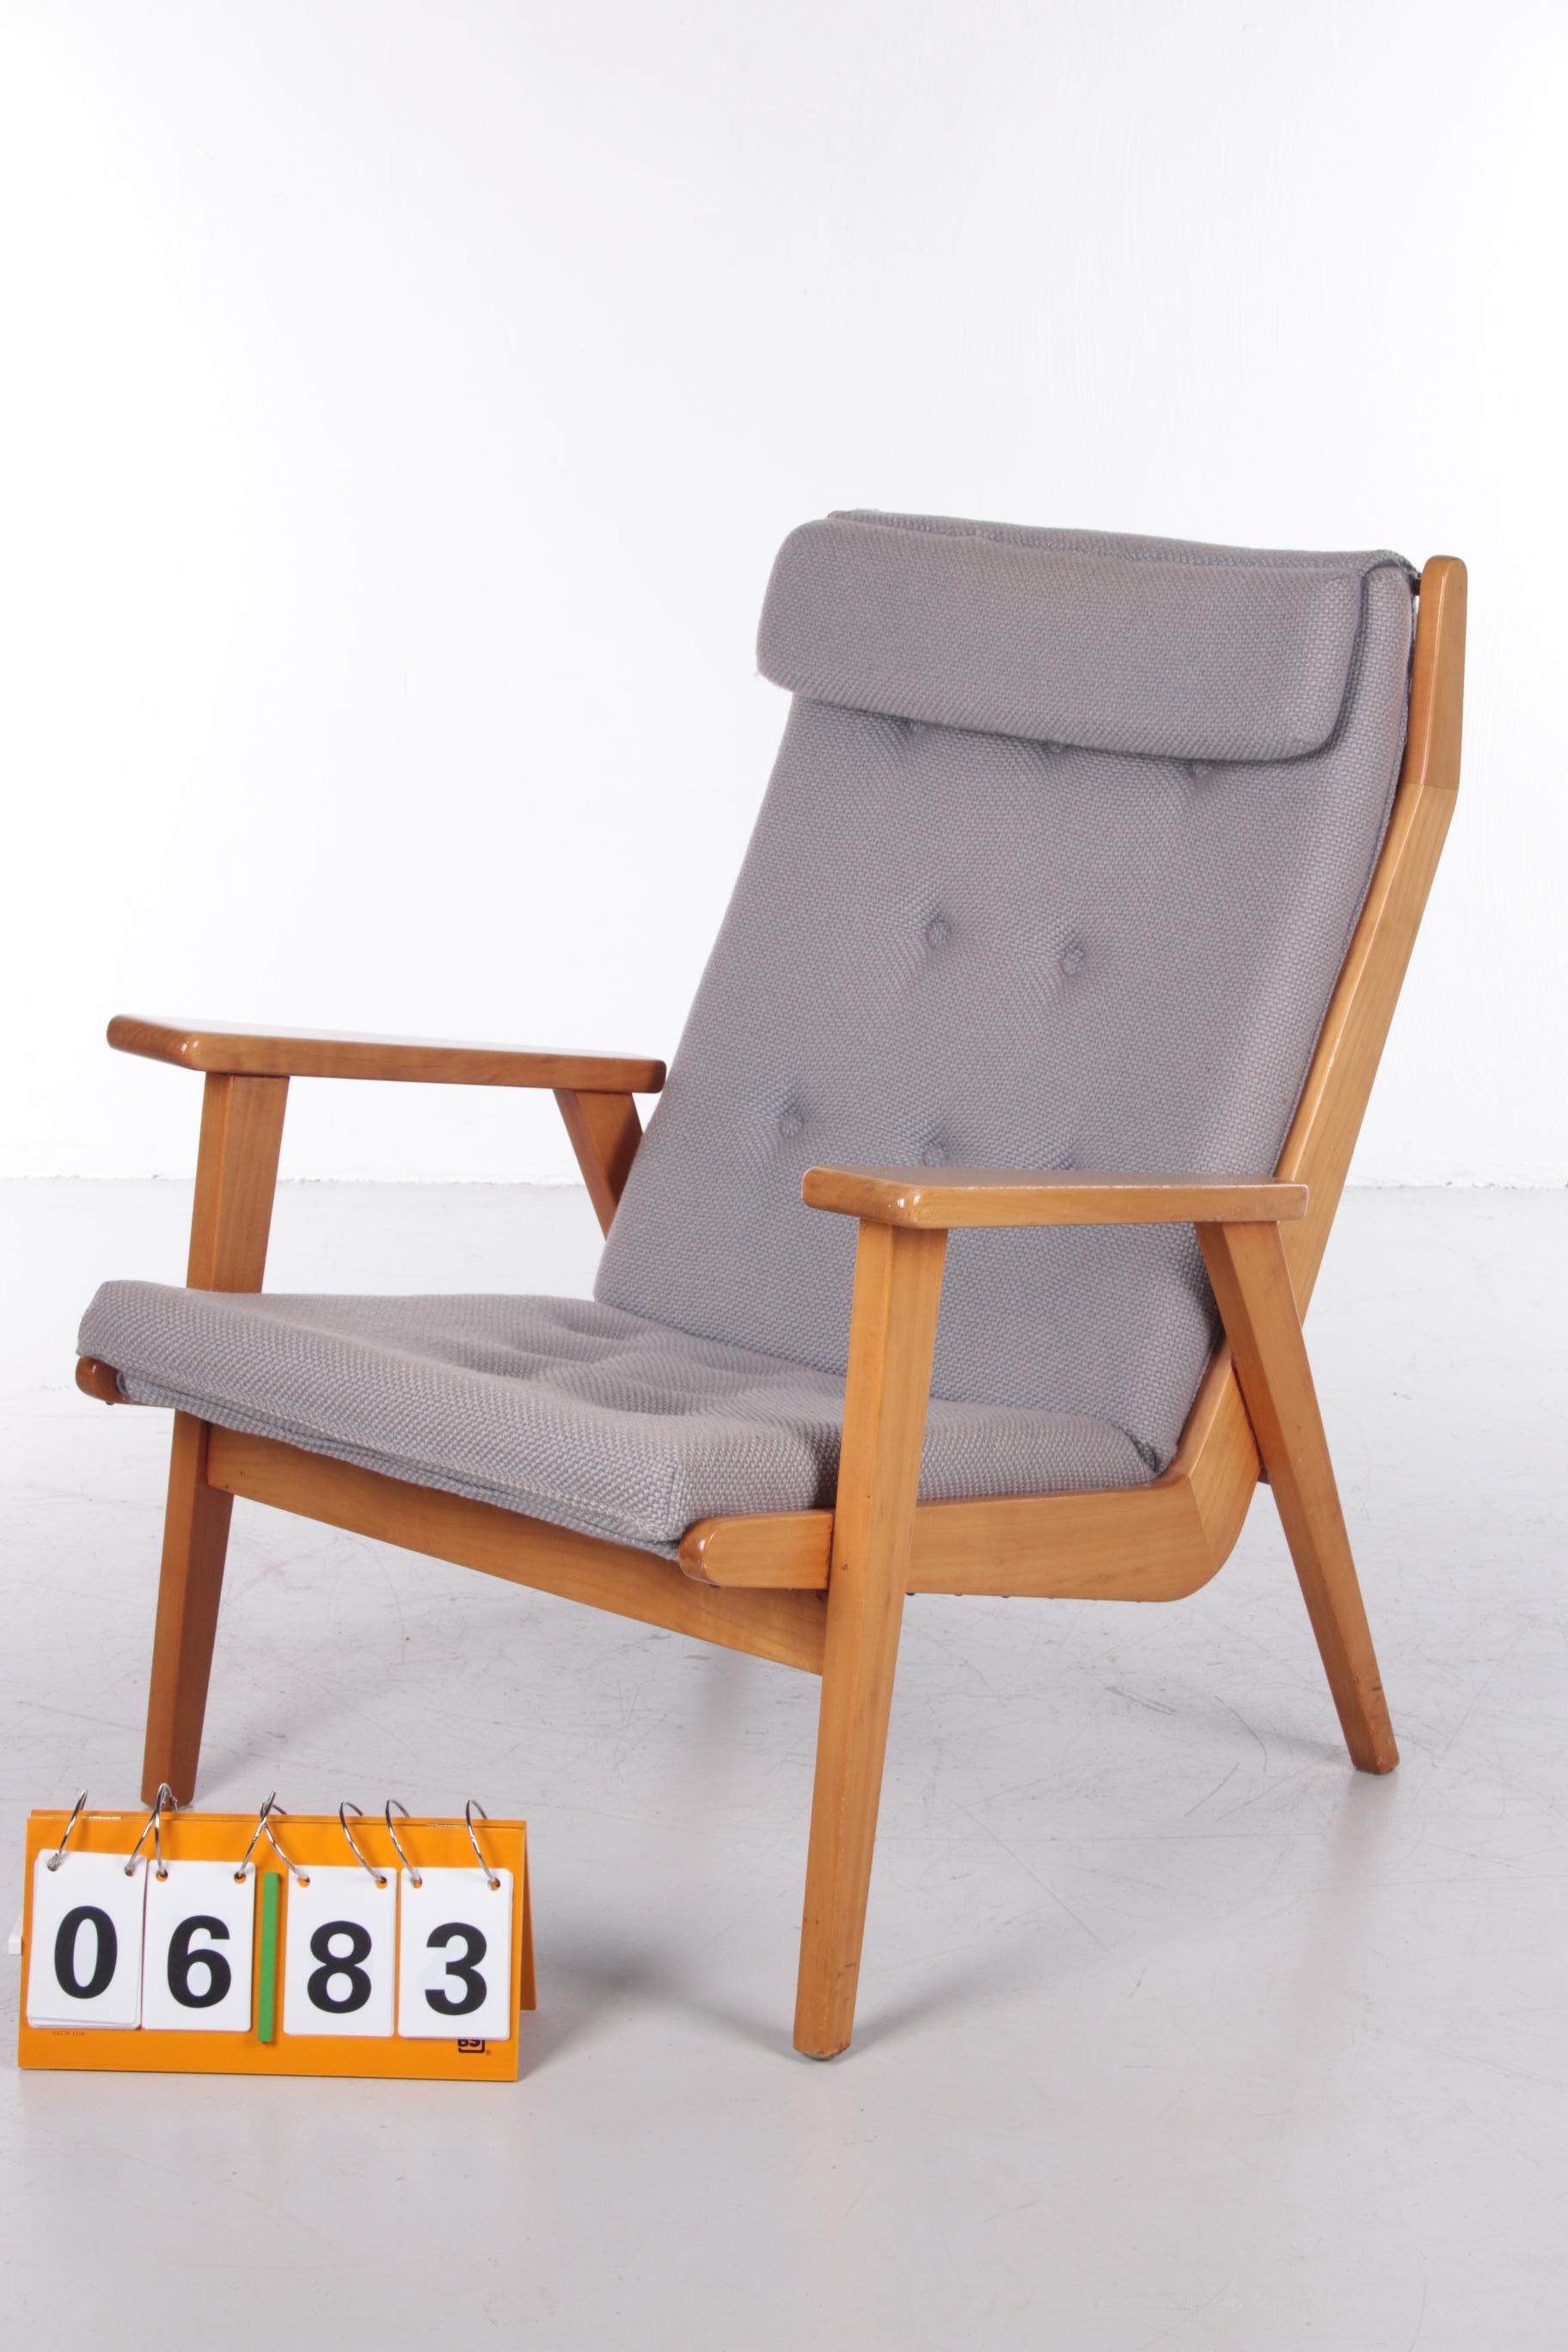 Rob Parry Lotus fauteuil vintage modèle 1611 5